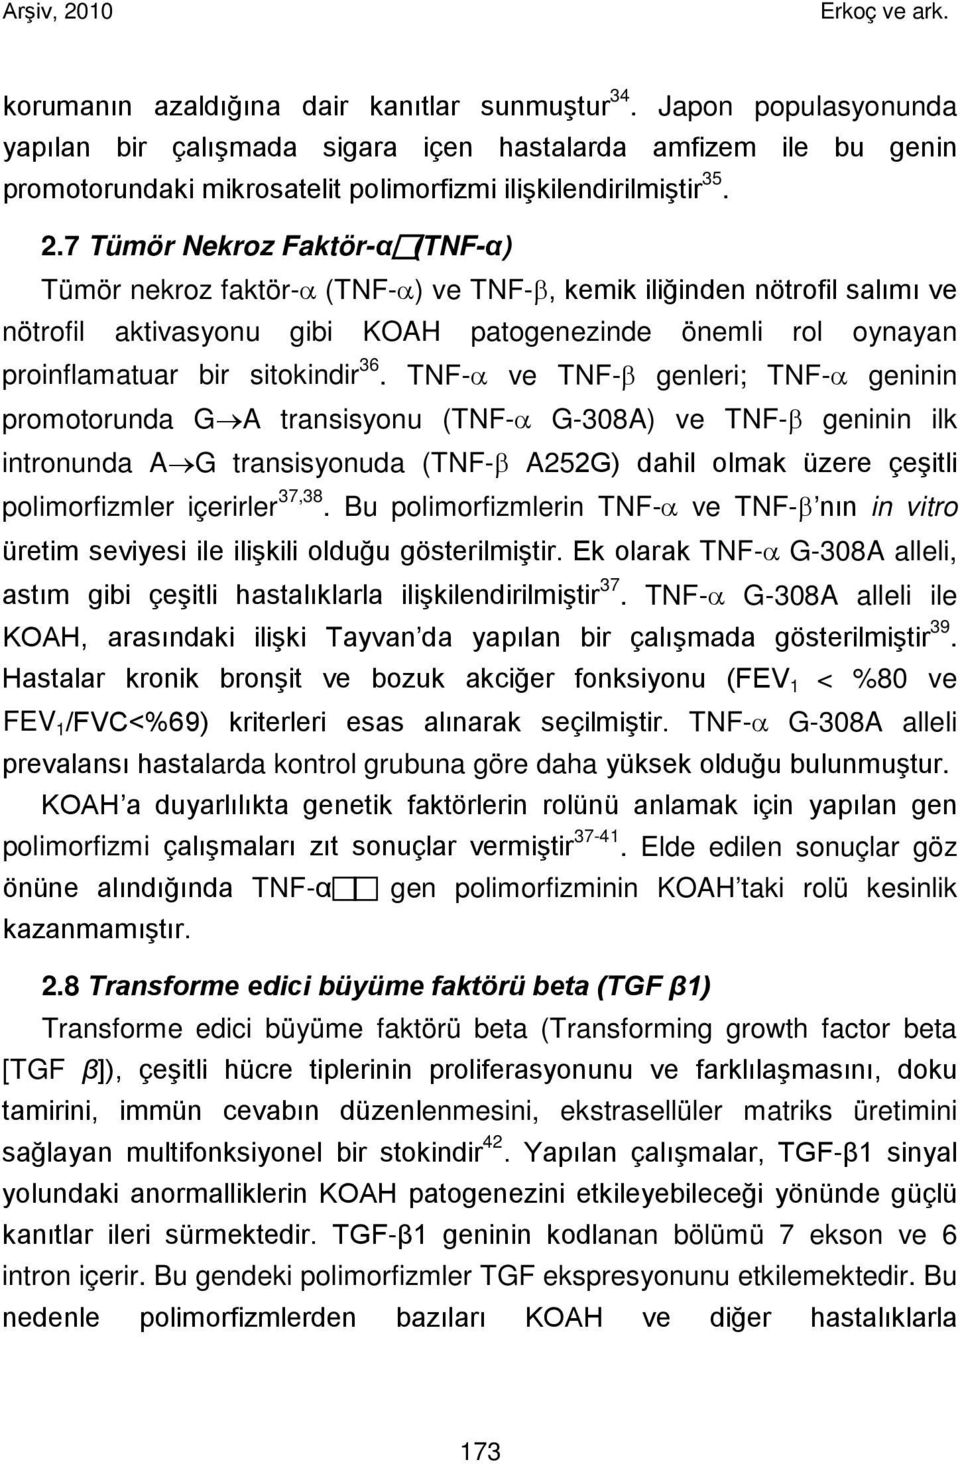 7 Tümör Nekroz Faktör-α (TNF-α) Tümör nekroz faktör-α (TNF-α) ve TNF-β, kemik iliğinden nötrofil salımı ve nötrofil aktivasyonu gibi KOAH patogenezinde önemli rol oynayan proinflamatuar bir